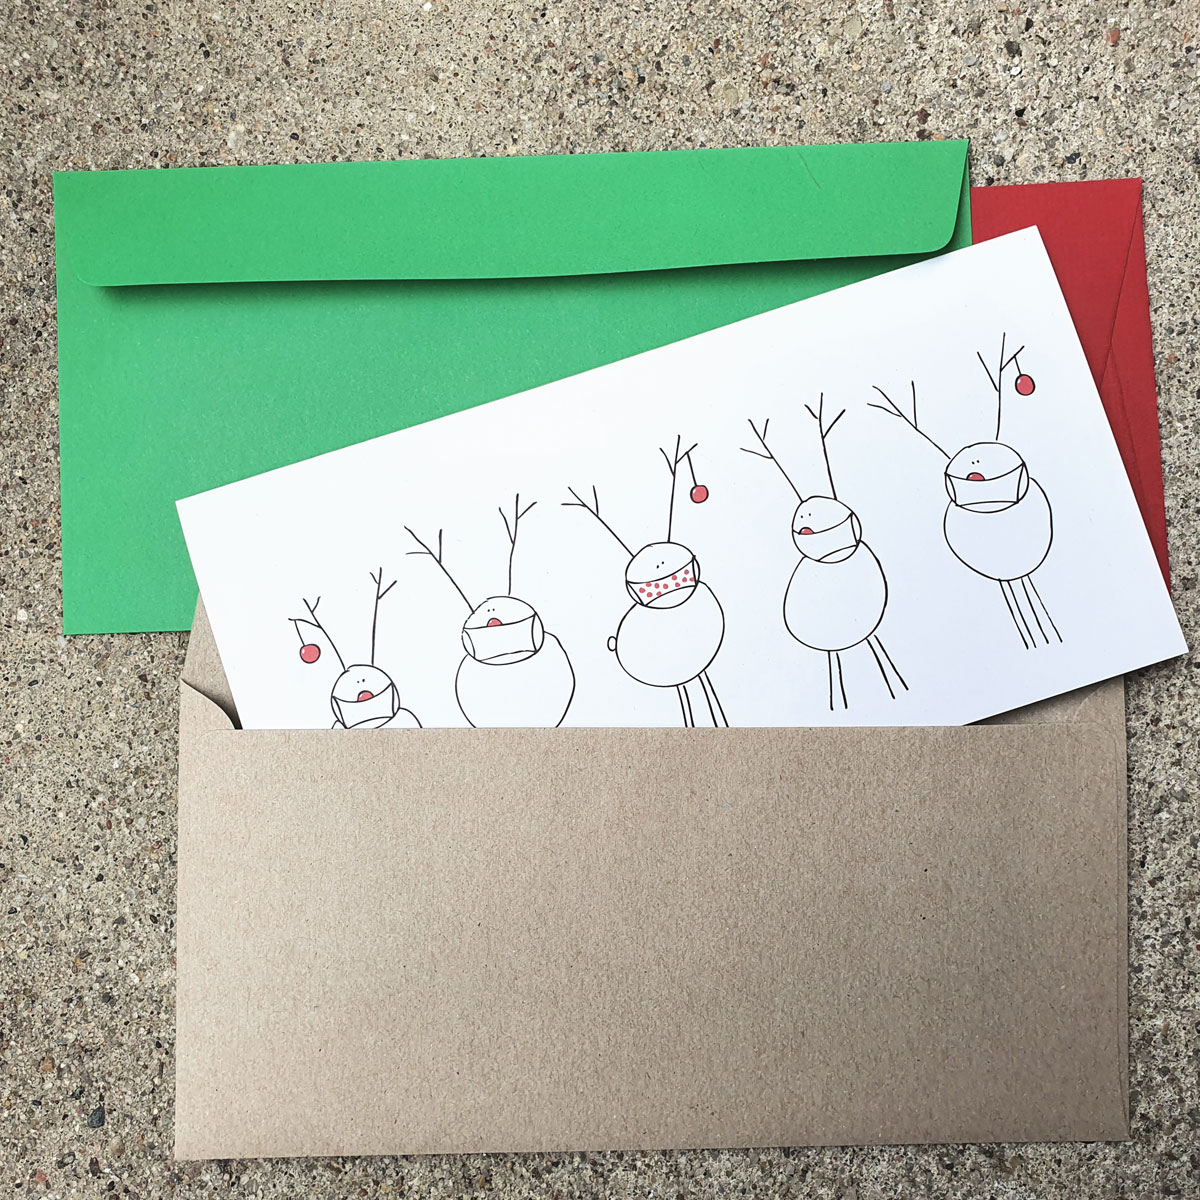 witzige Recycling-Weihnachtskarten für die Coronazeit: Team Rudolph (2021 - mit Maske)